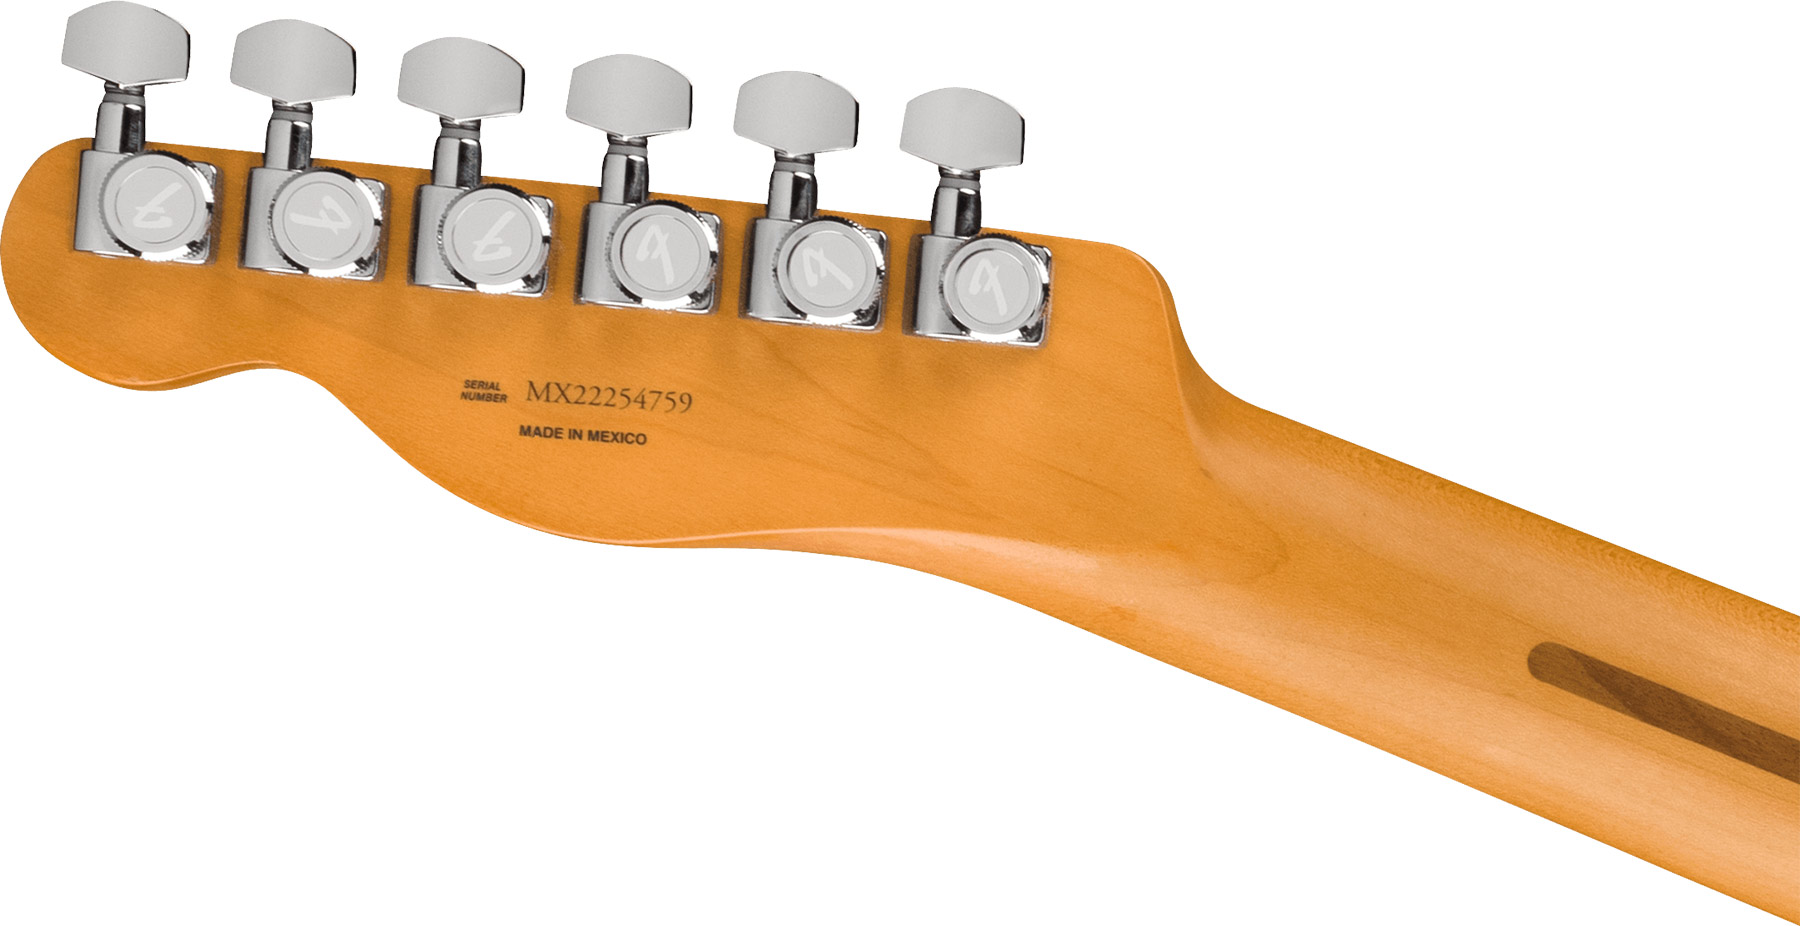 Fender Tele Player Plus Mex 2023 2s Ht Mn - Butterscotch Blonde - Guitarra eléctrica con forma de tel - Variation 3